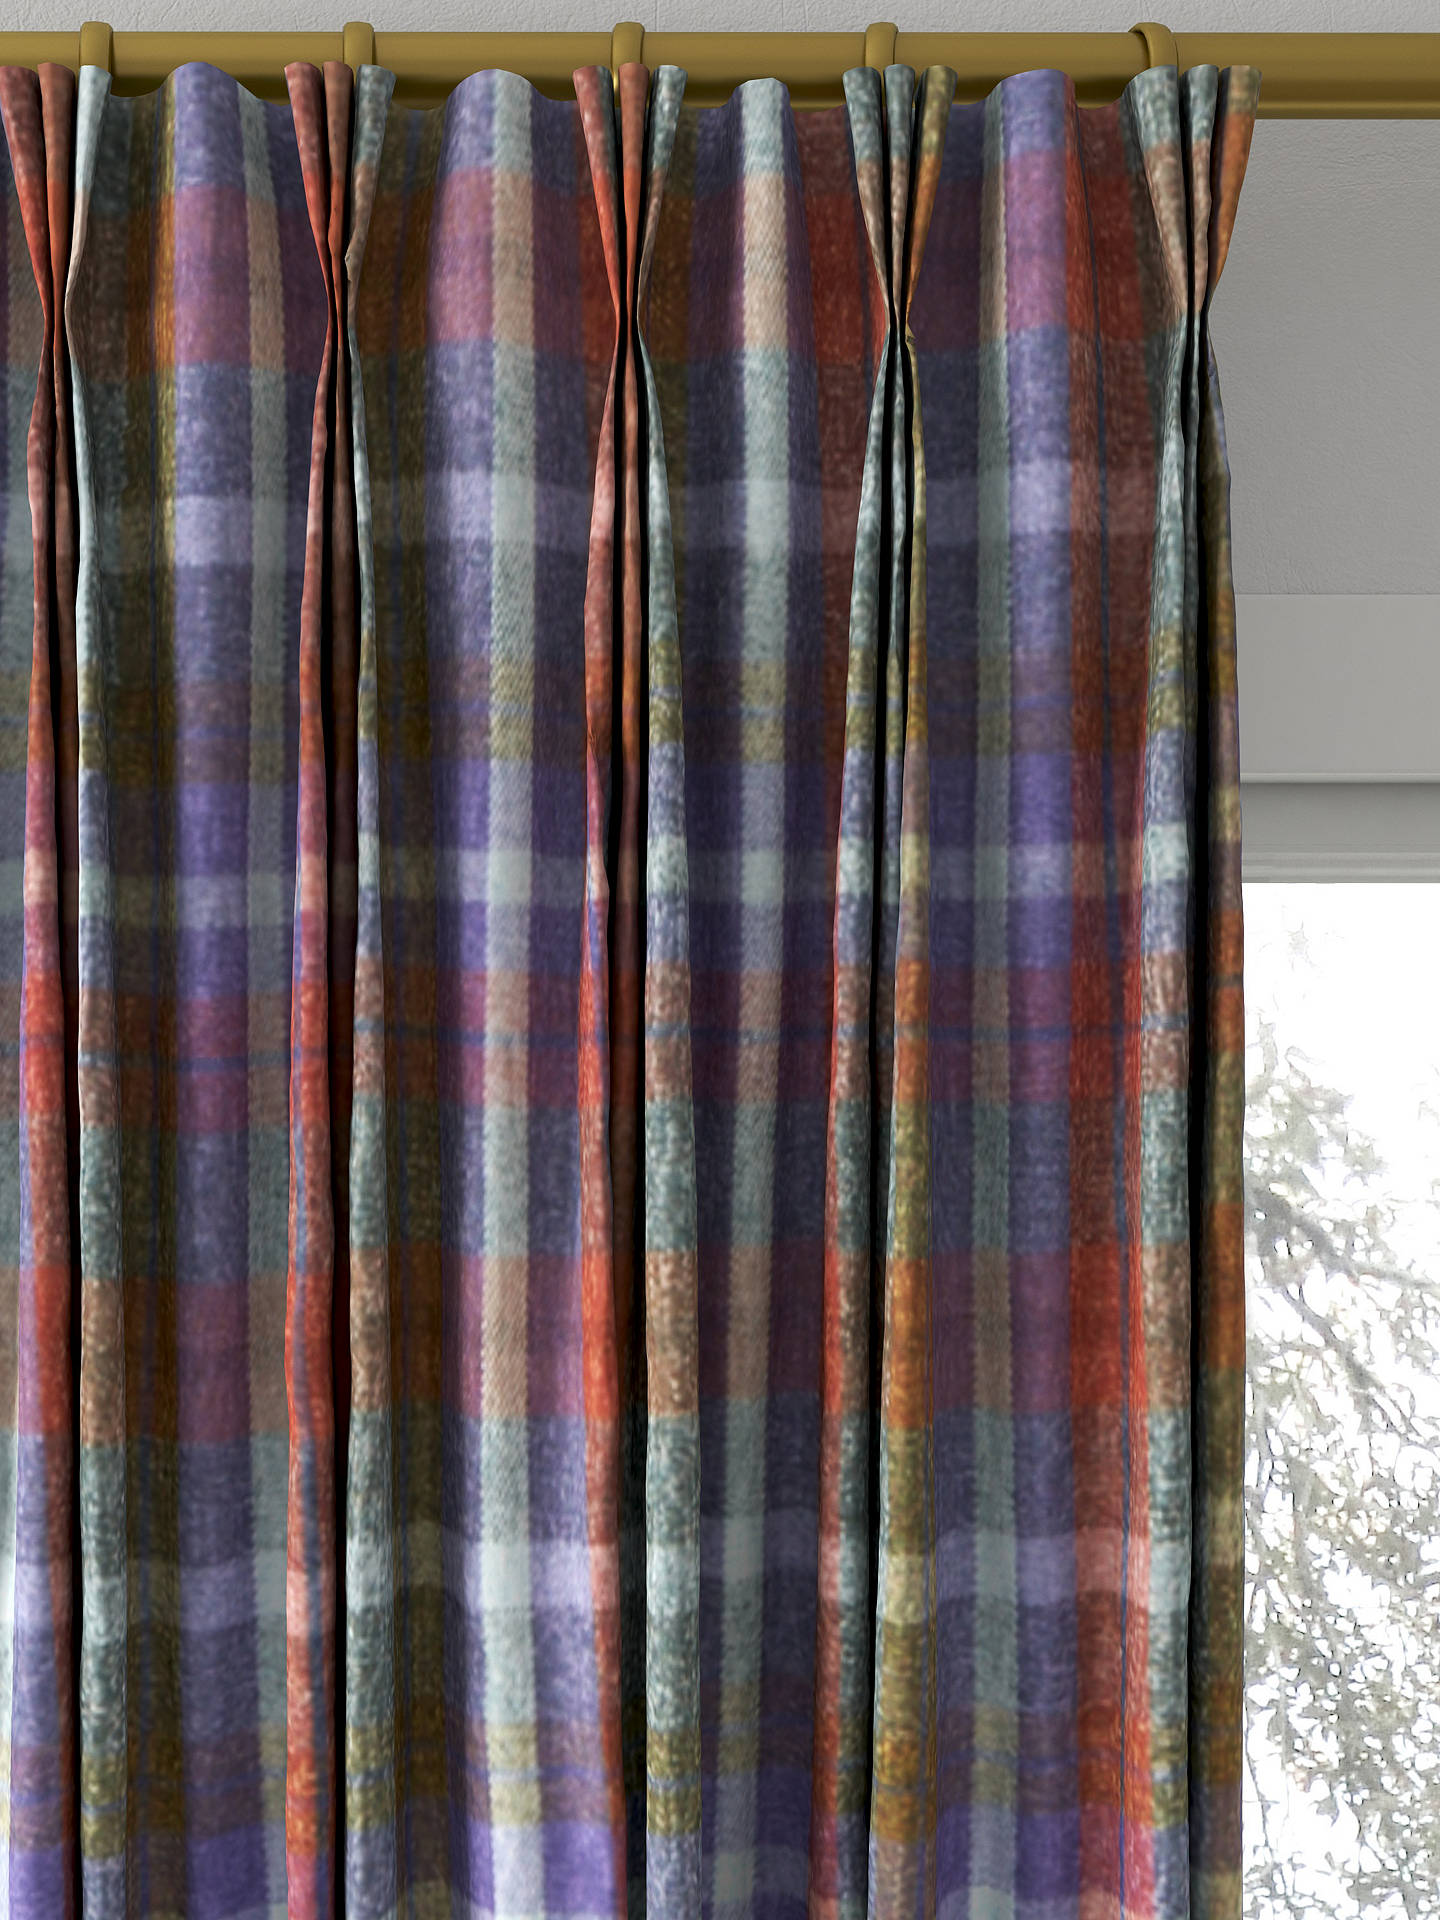 Prestigious Textiles Galloway Made to Measure Curtains, Bracken